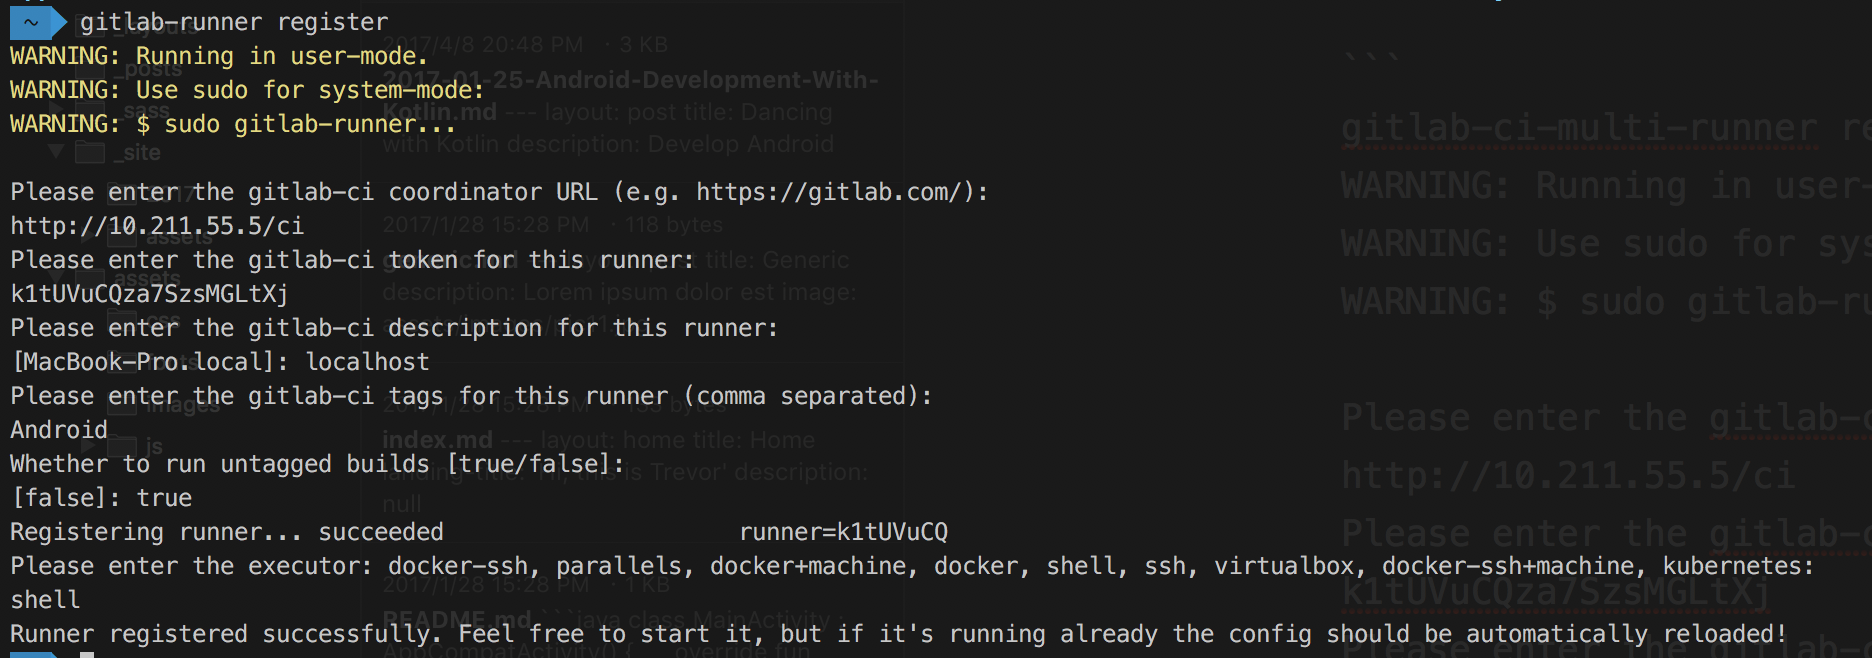 Gitlab runner register